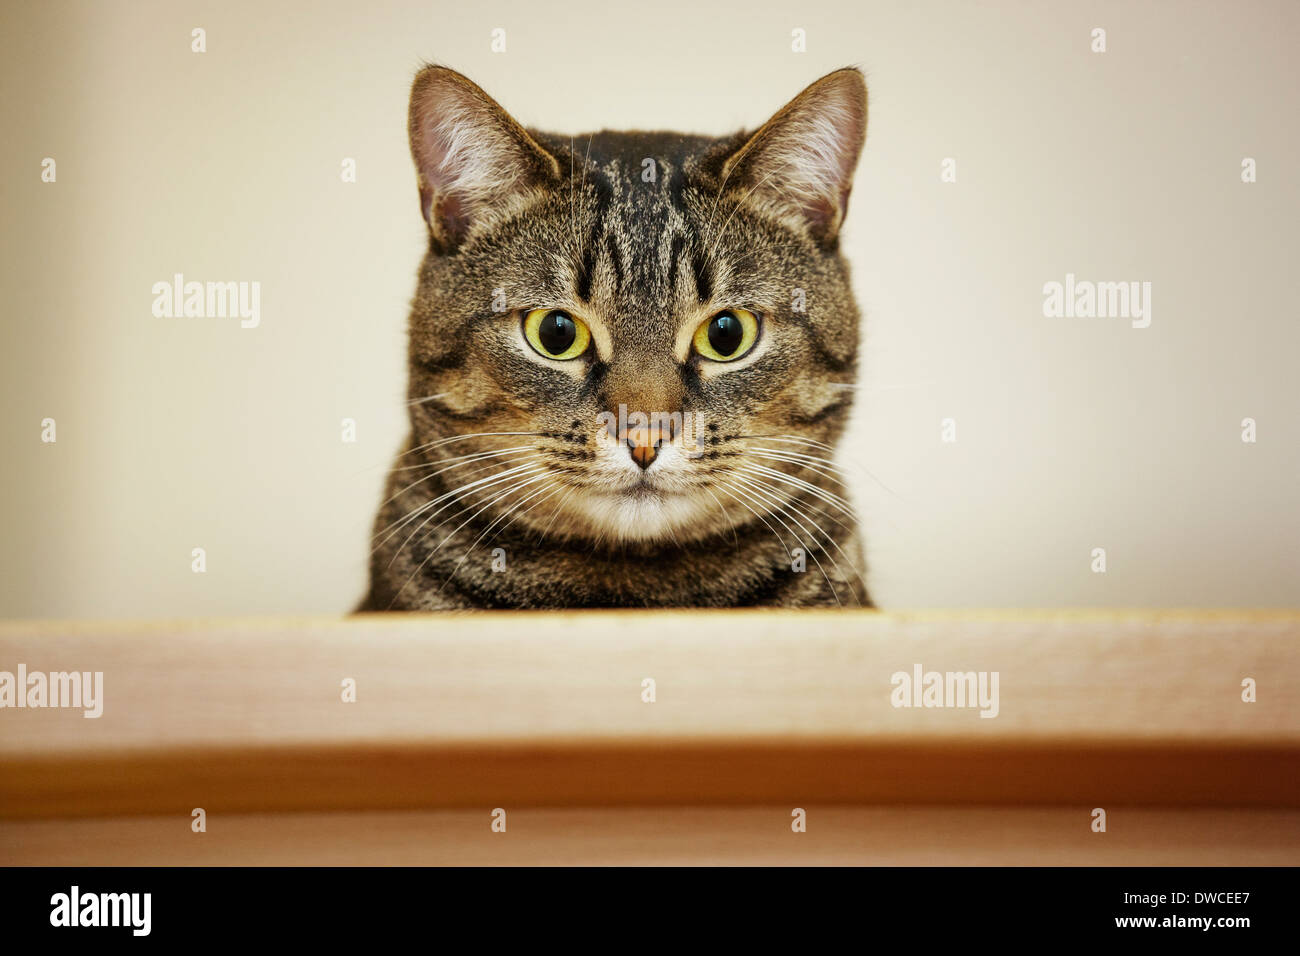 Close up ritratto di gatto domestico con sgombri tabby pattern Foto Stock